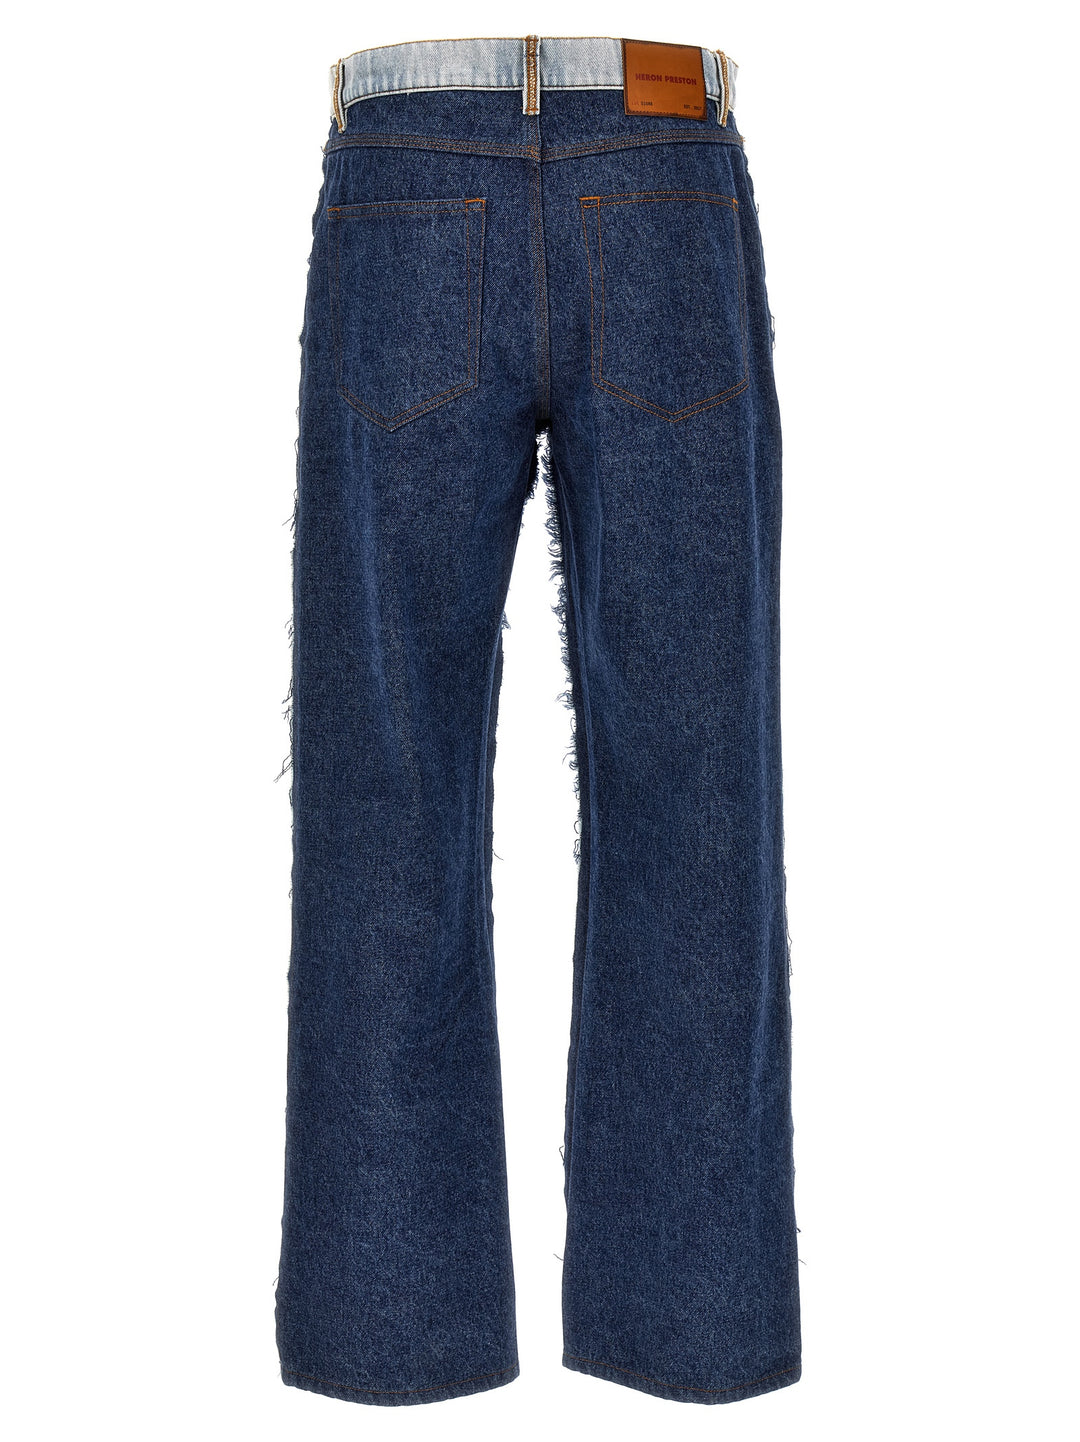 Washed Insideout Carpenter Jeans Celeste